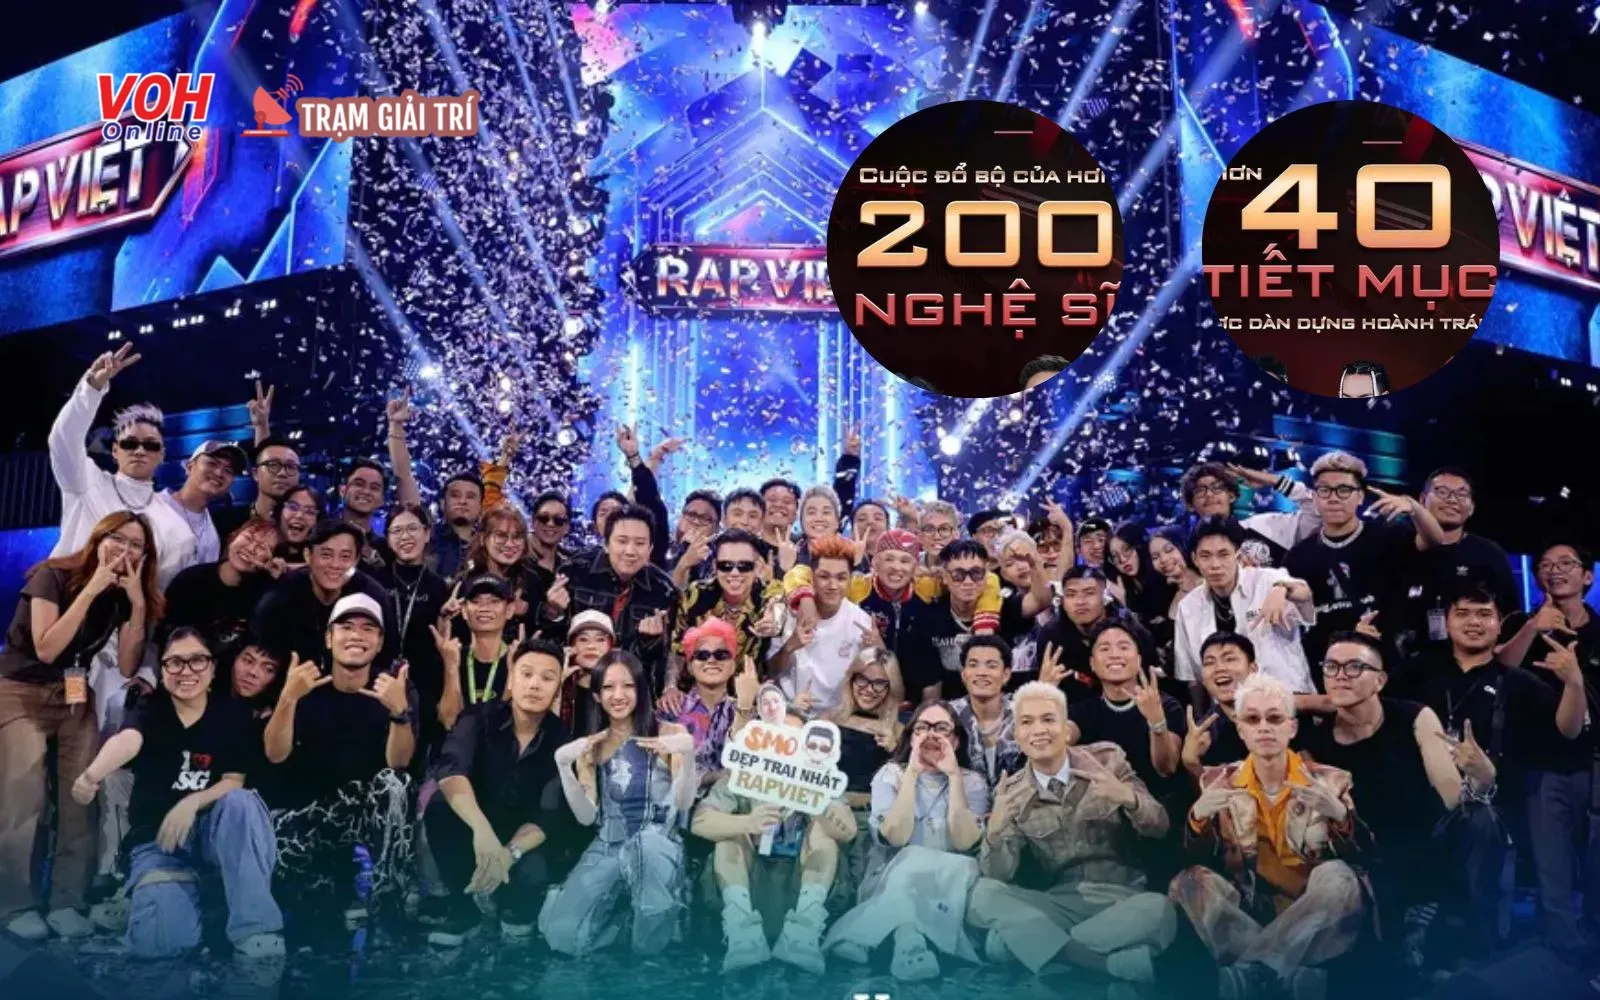 Rap Việt All-Star Concert 2023 quy tụ 200 nghệ sĩ tham gia, 40 tiết mục hoành tráng đổ bộ